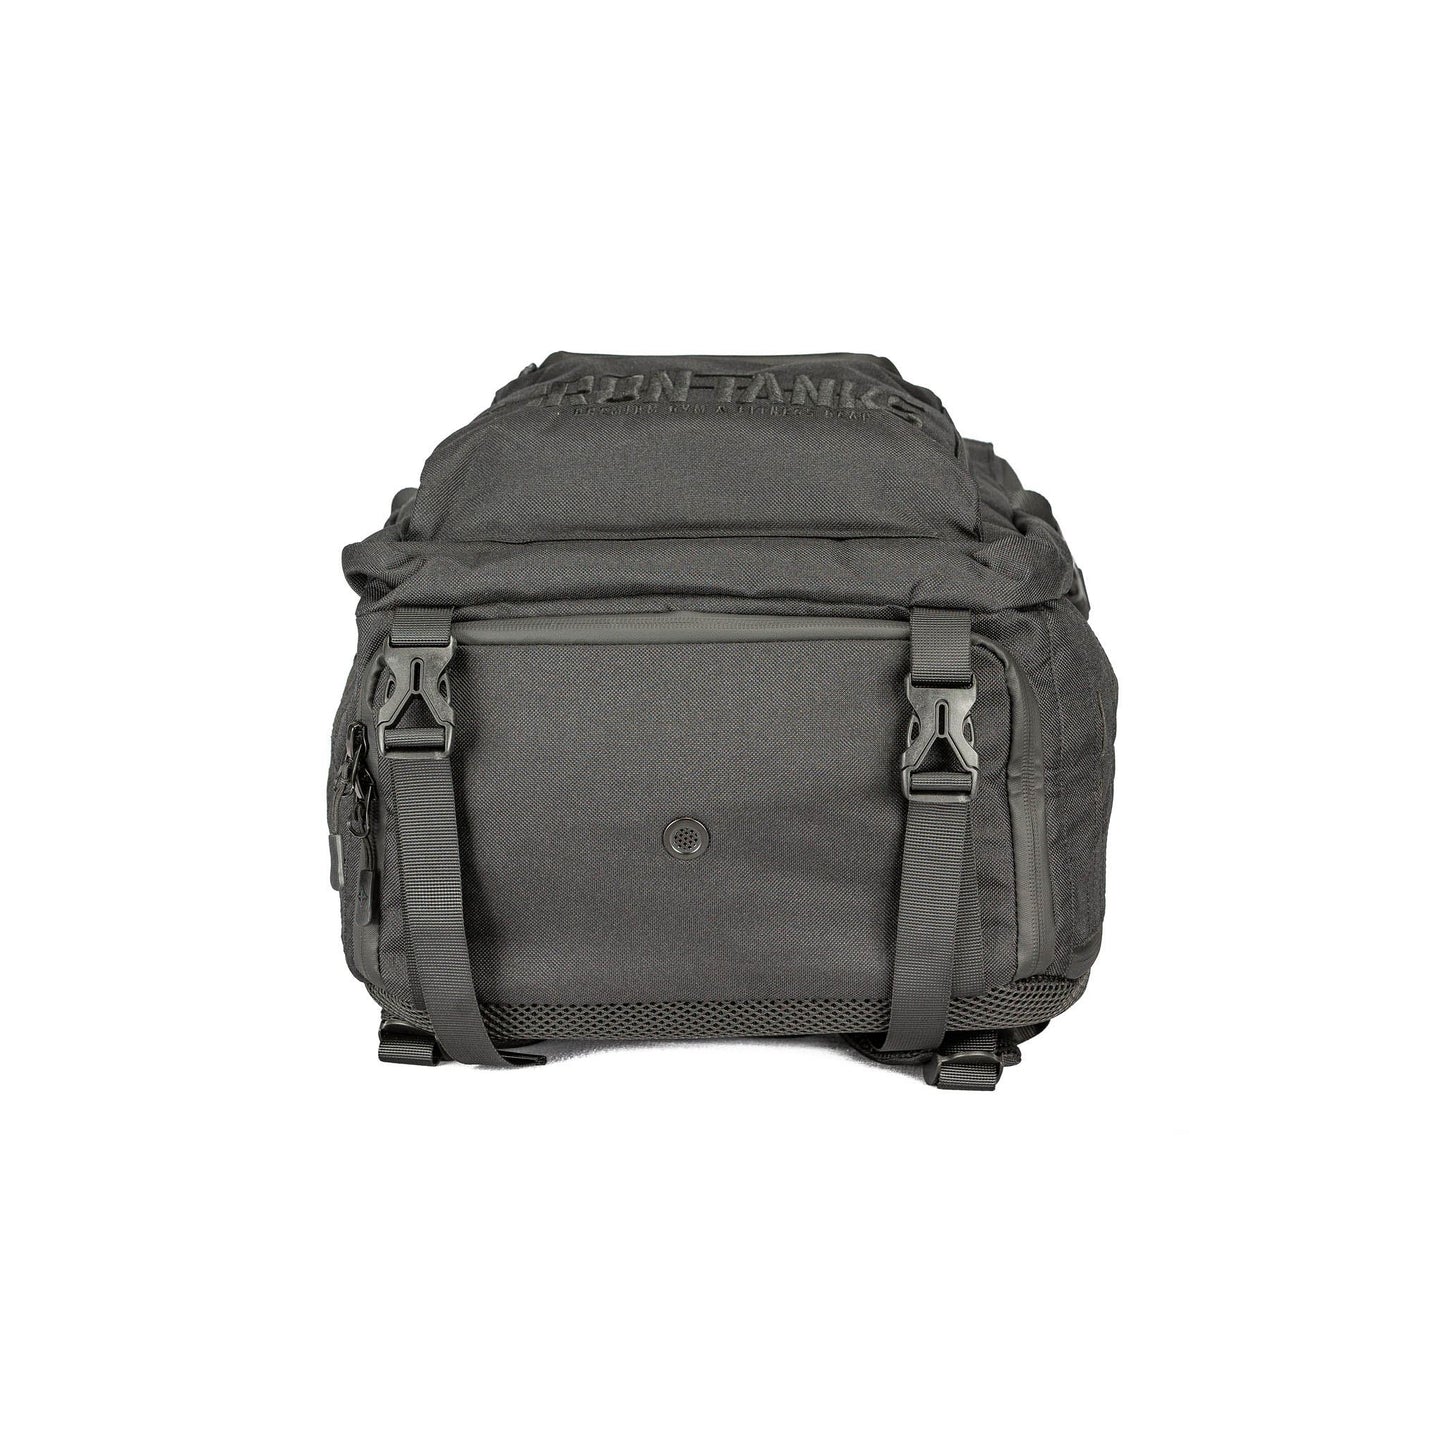 Iron Tanks Vault 40L Backpack Gym Bag - Stealth Black